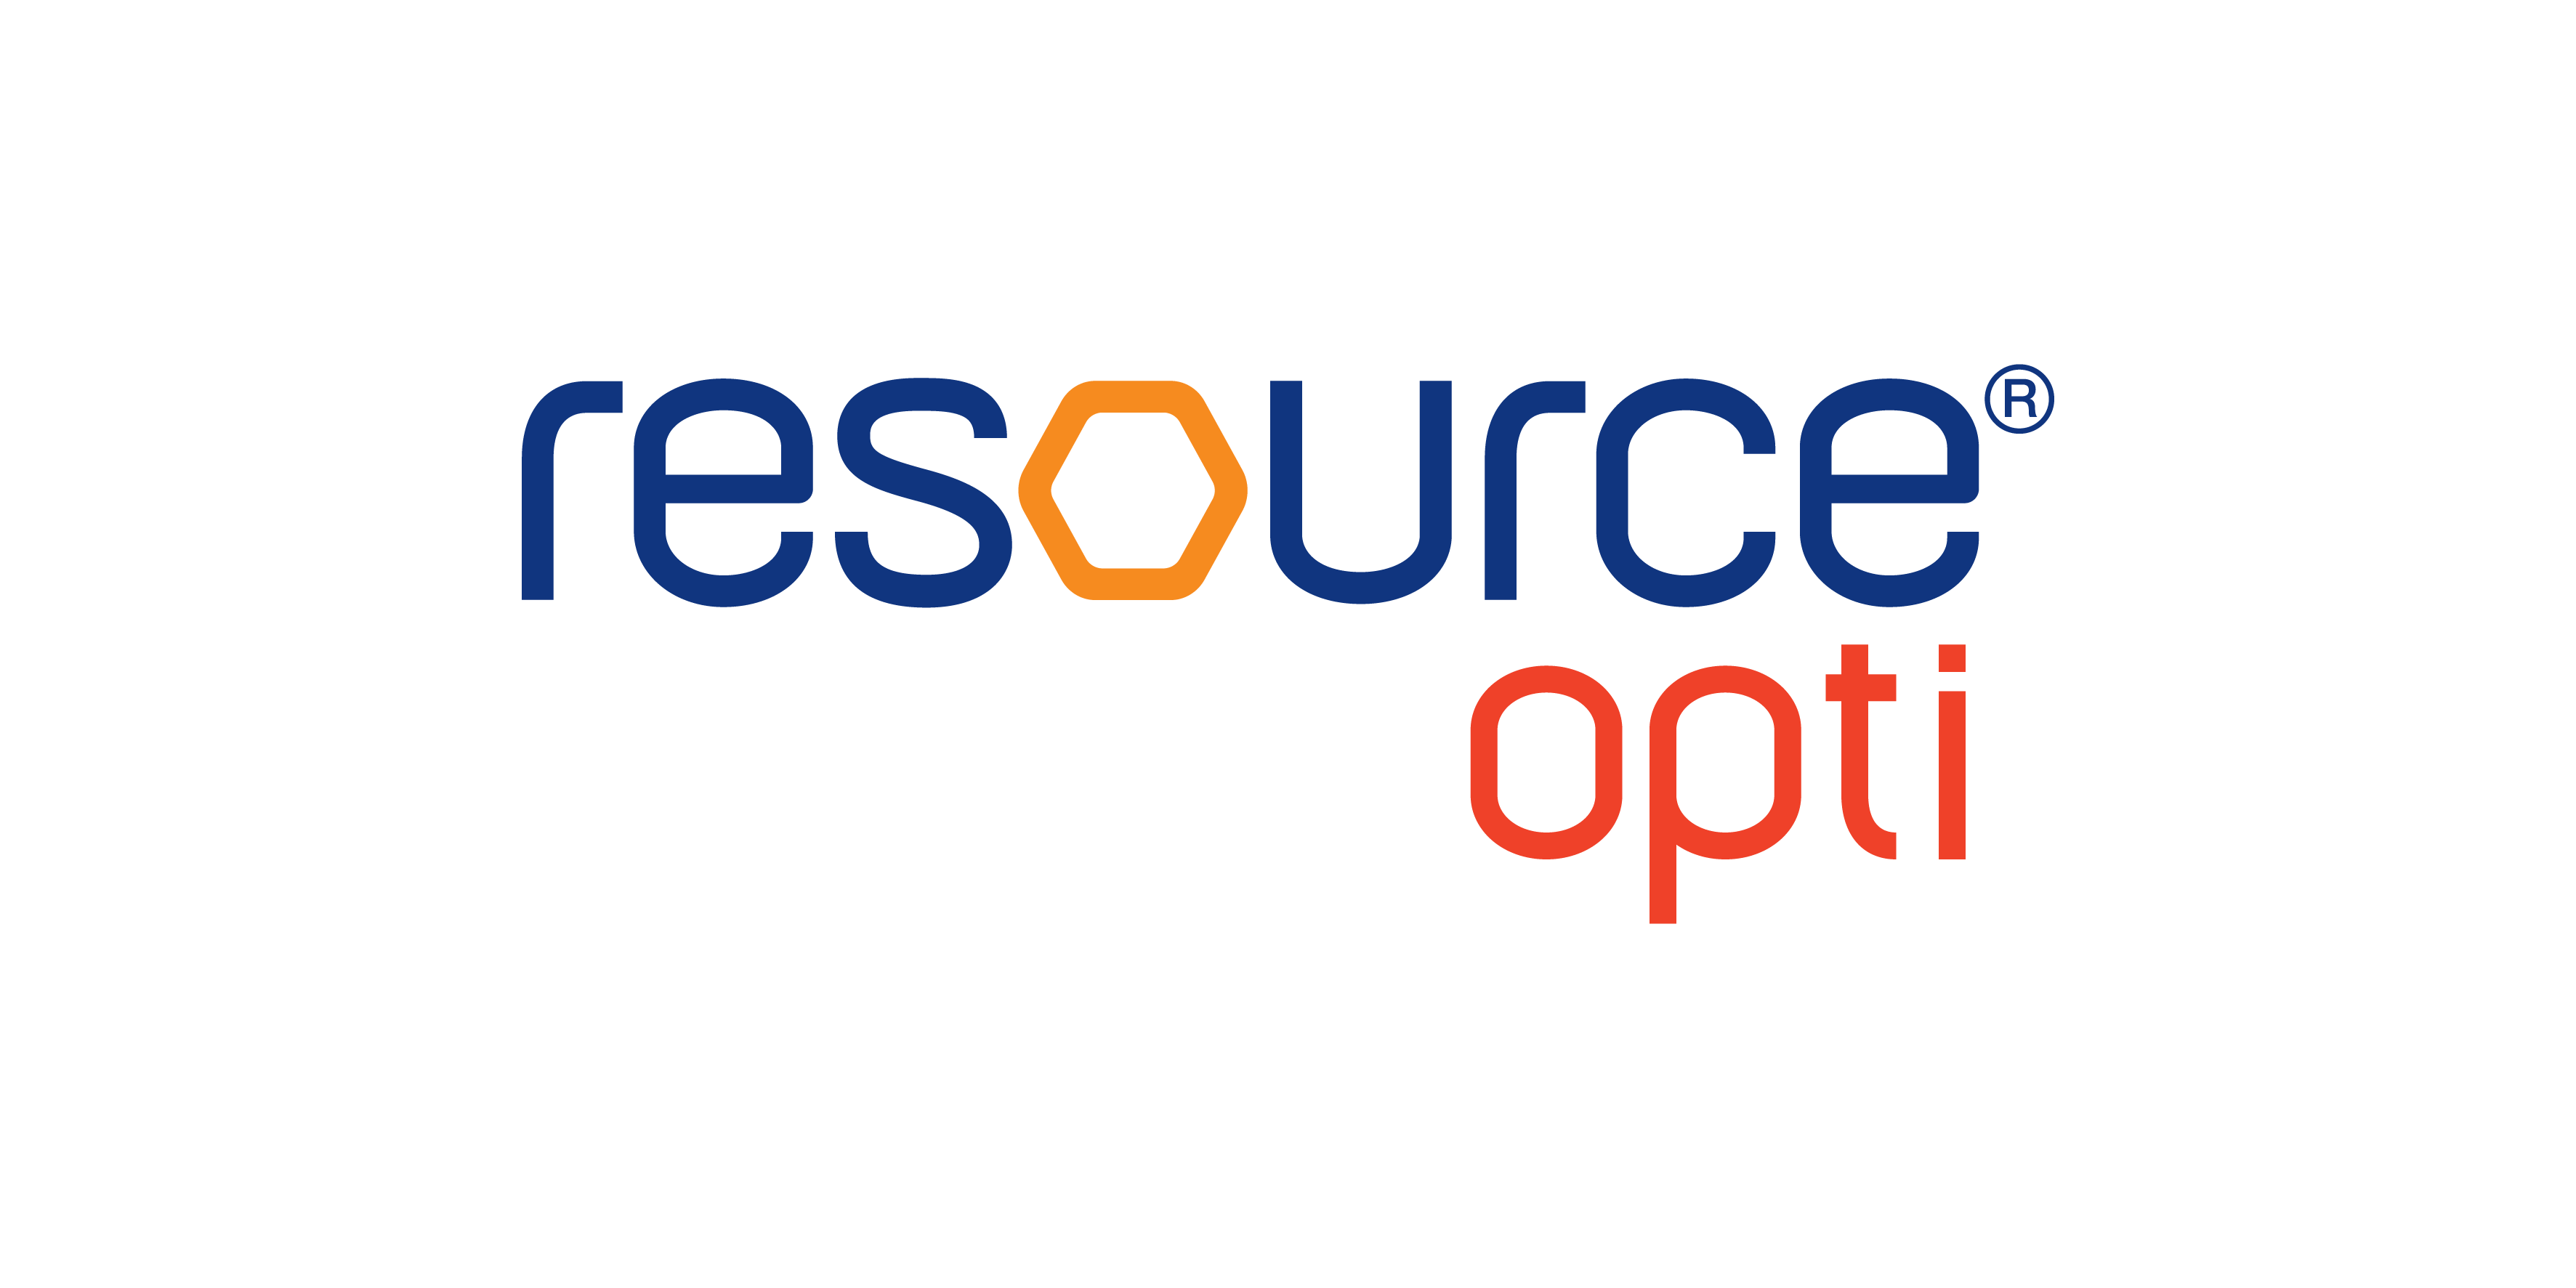 Resource Opti